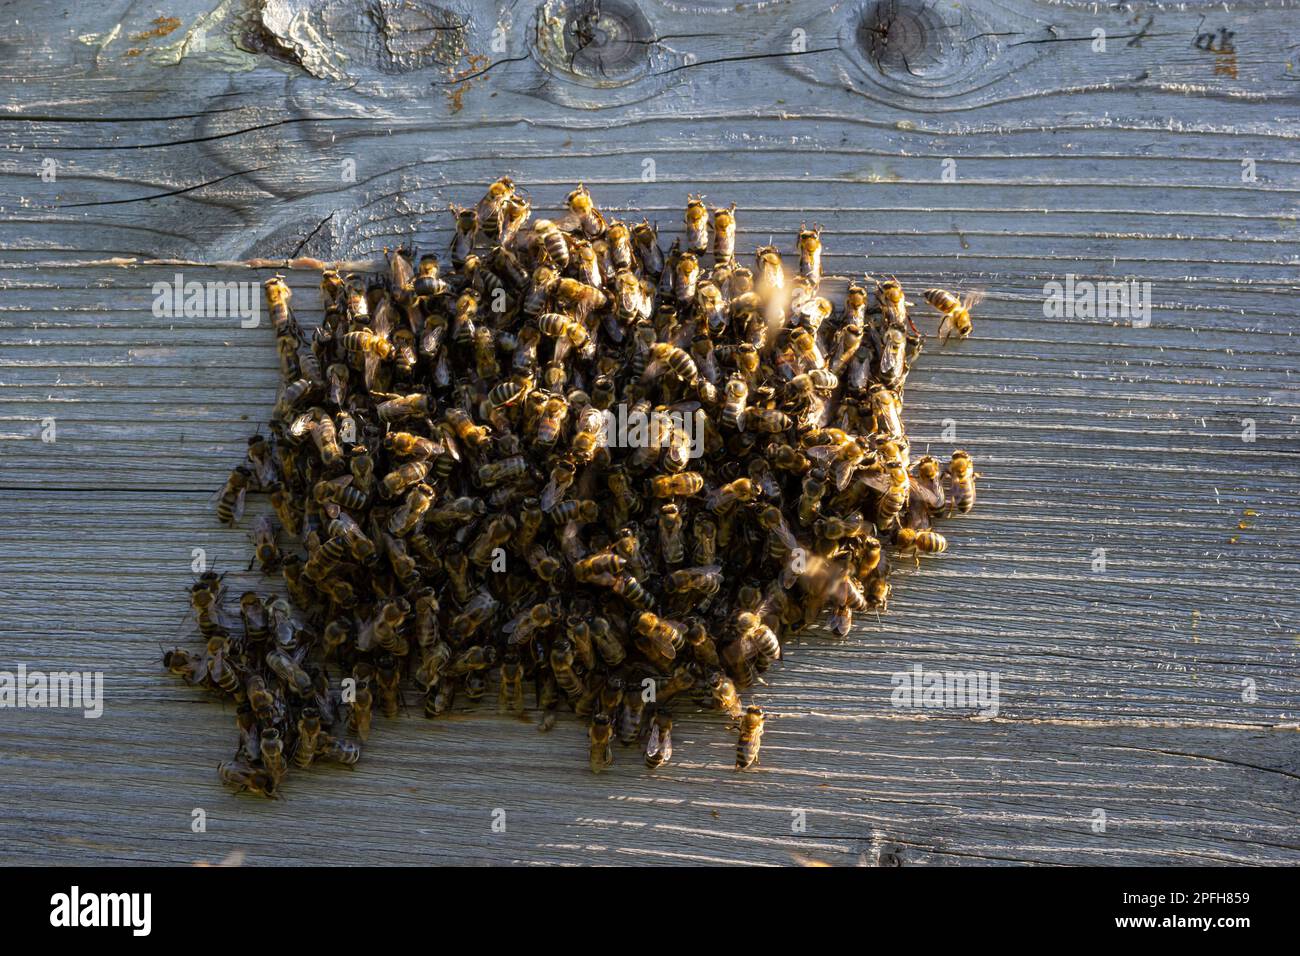 Ein Schwarm Honigbienen, die um den Bienenstock fliegen. Bienen, die von der Honigsammlung zurückkehren, fliegen zurück zum Bienenstock. Honigbienen auf Hausbiene, Imkereikonzept. Stockfoto